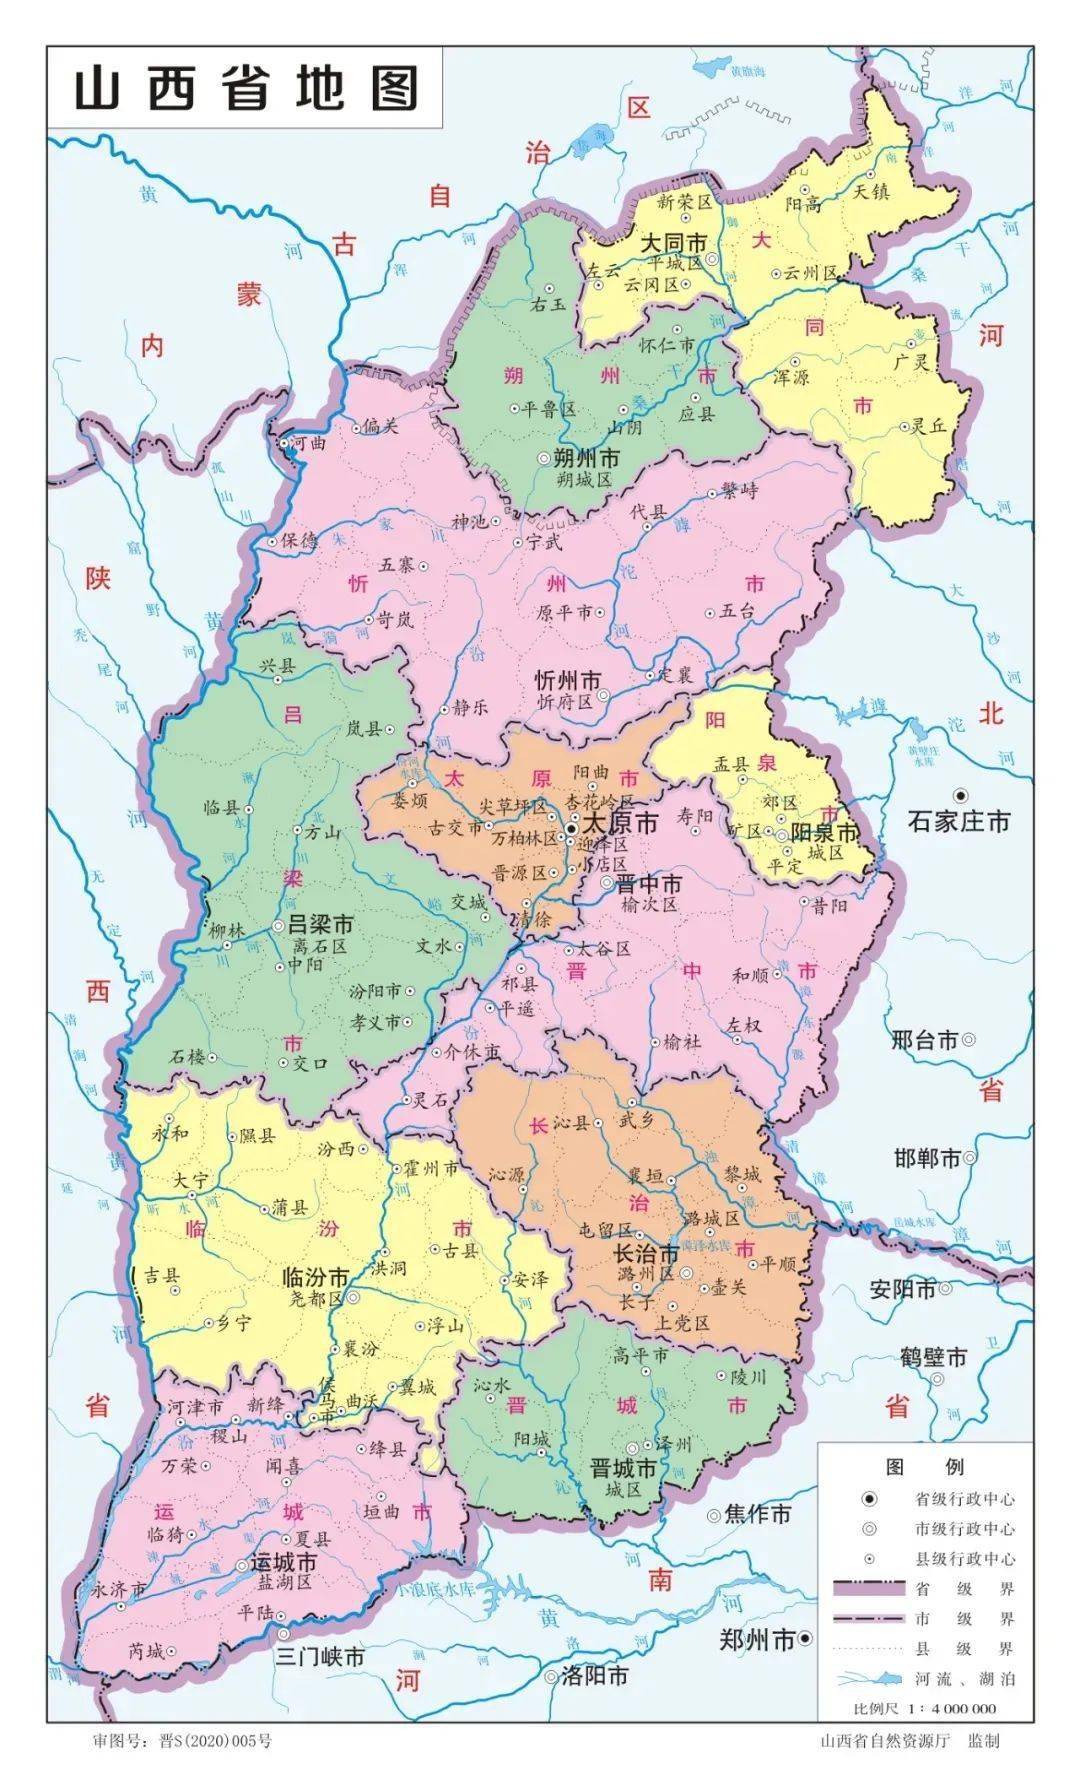 2020版山西省标准地图发布新增示意图和水系图